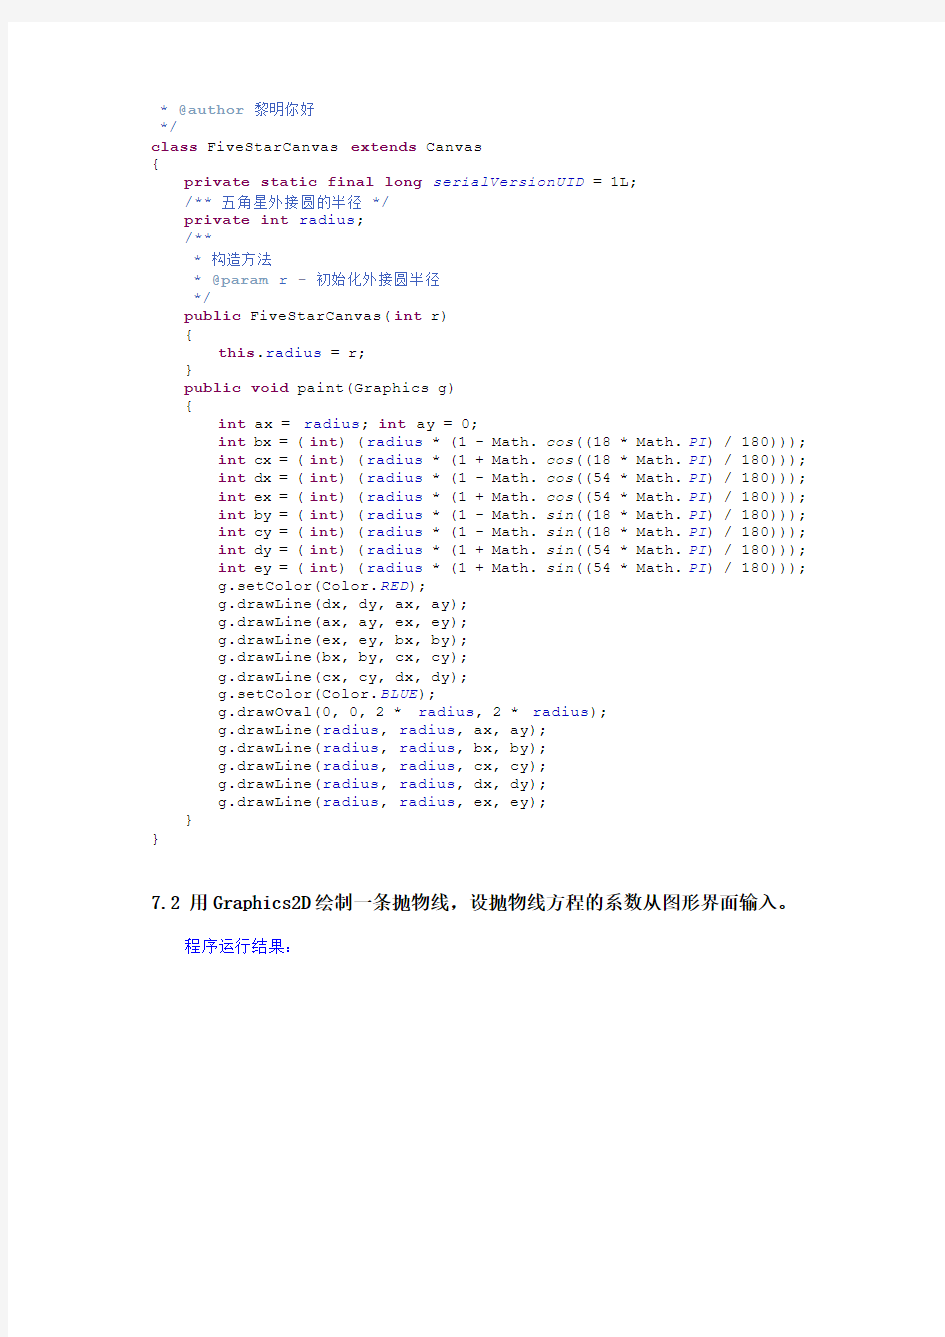 2011年1月广东自考JAVA语言程序设计(一)课后习题答案和源代码(第七章)